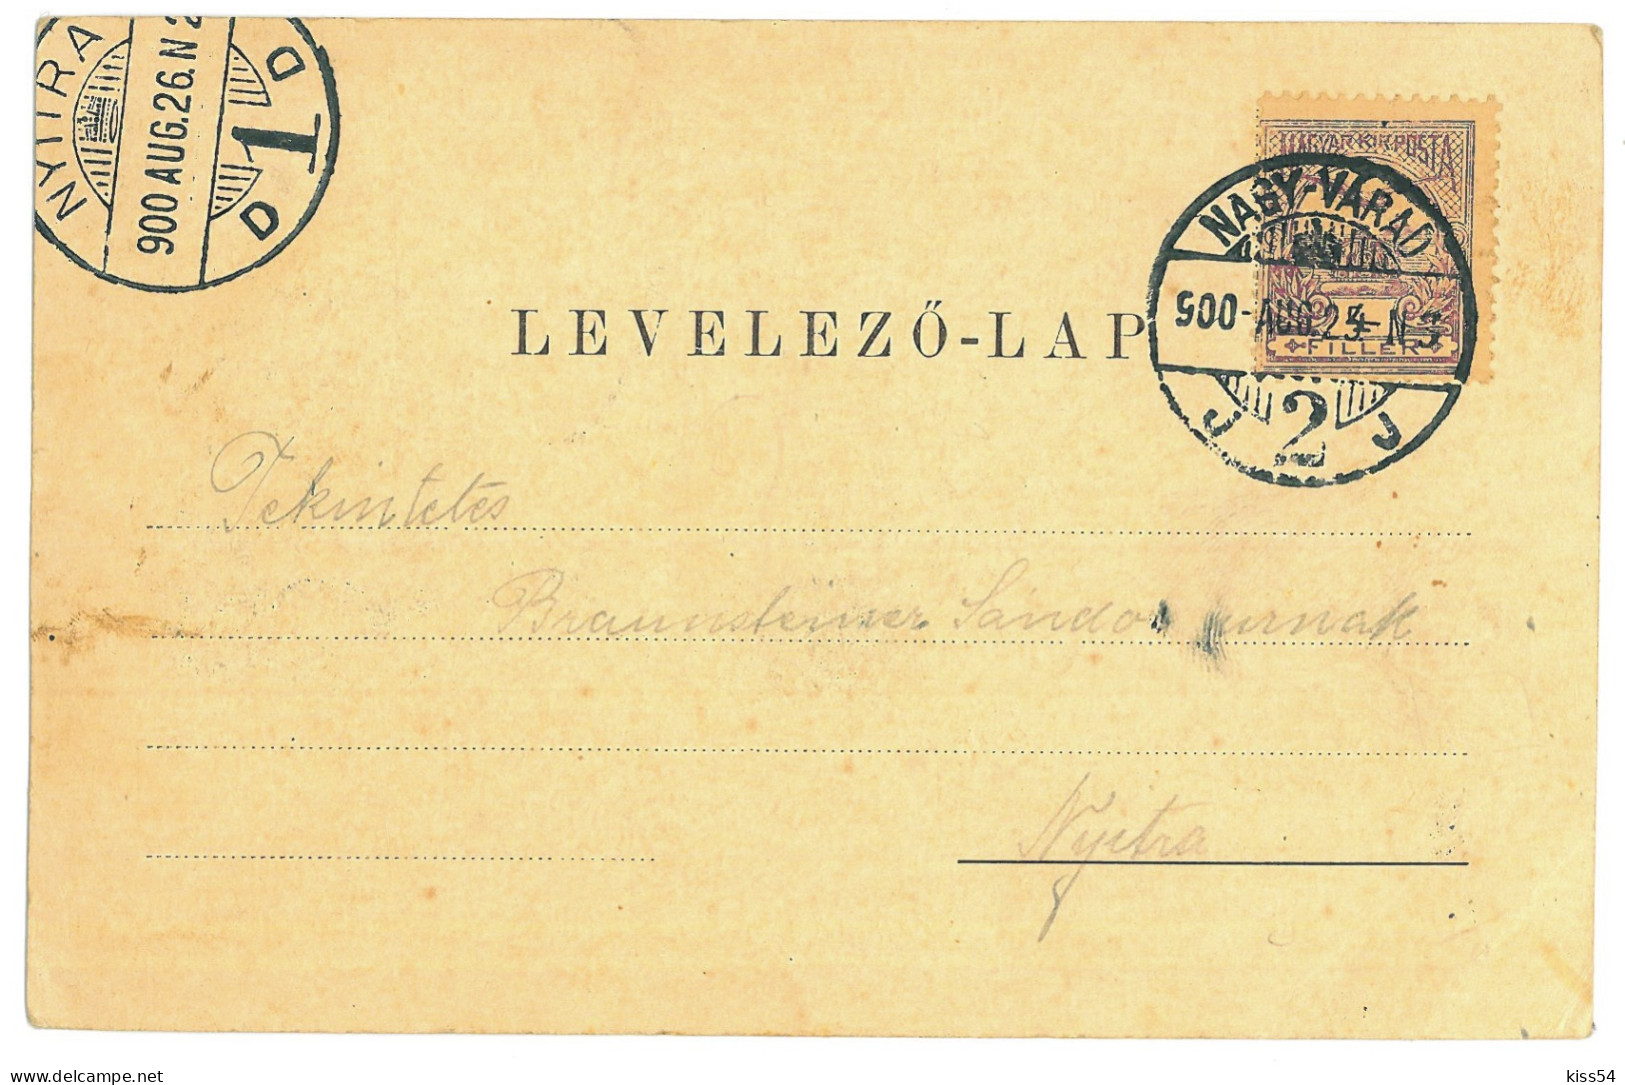 RO 84 - 24300 ORADEA, Military High School, Litho, Romania - Old Postcard - Used - 1900 - Romania